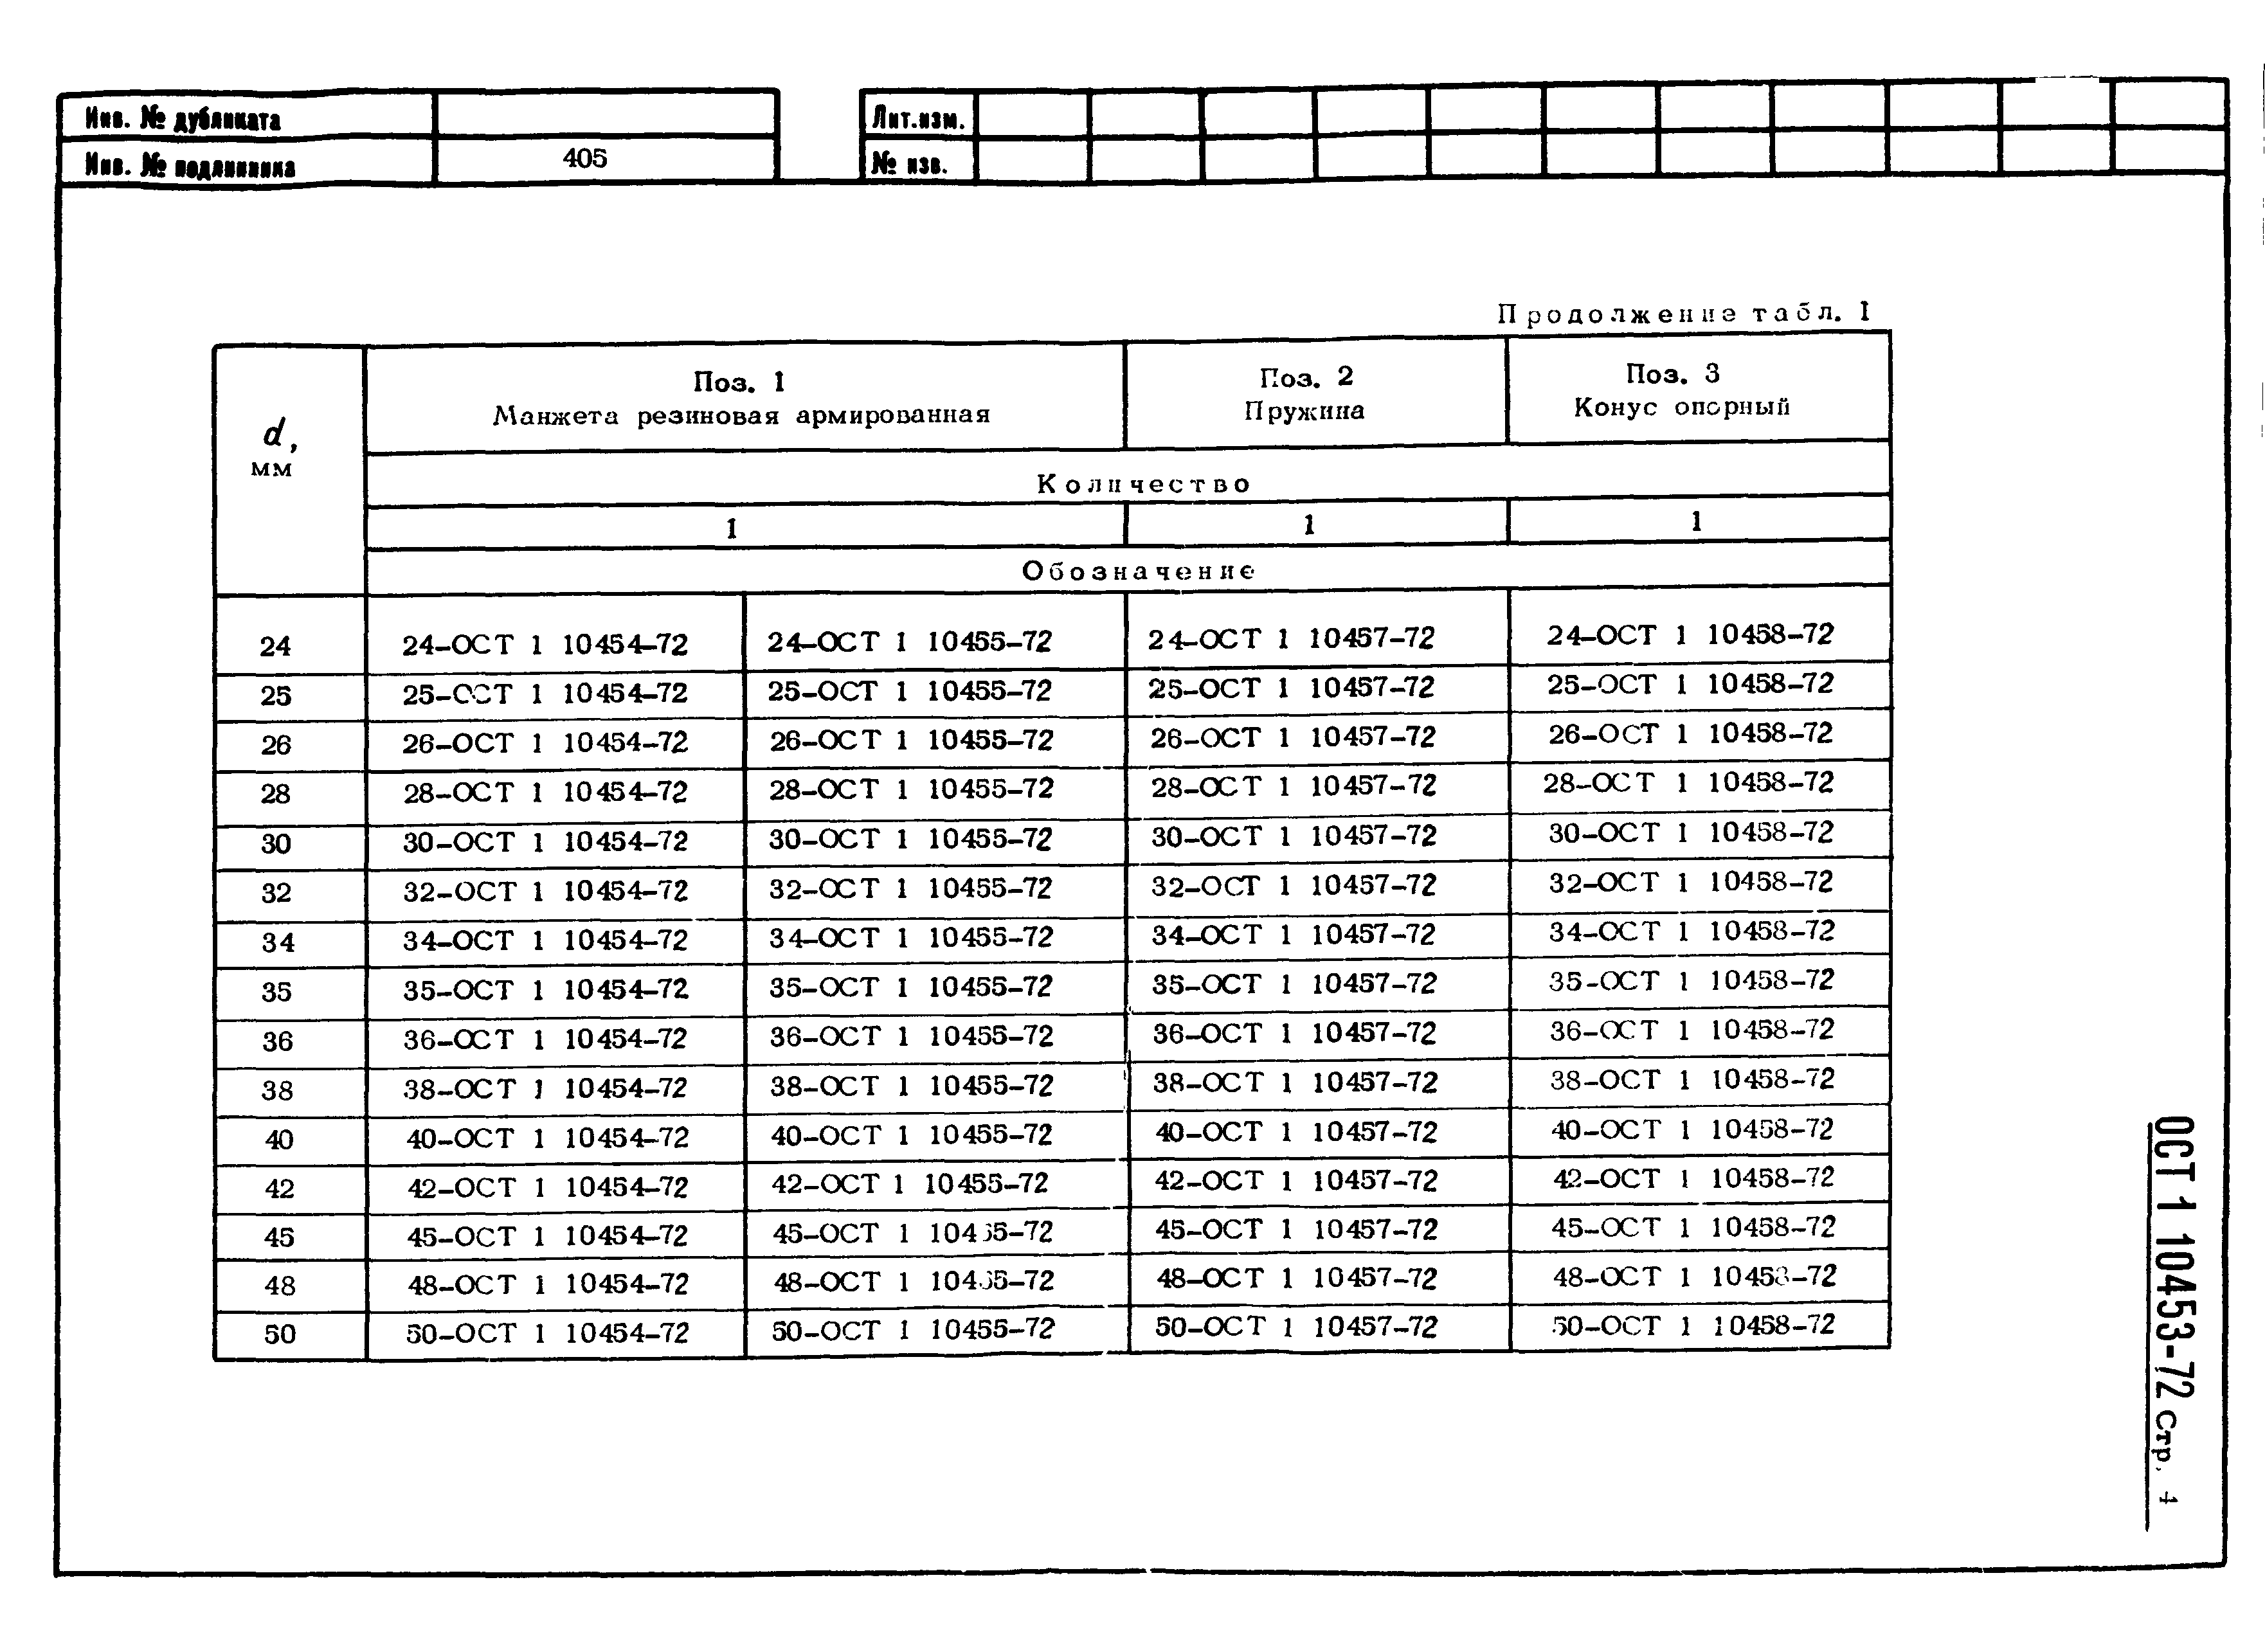 ОСТ 1 10453-72